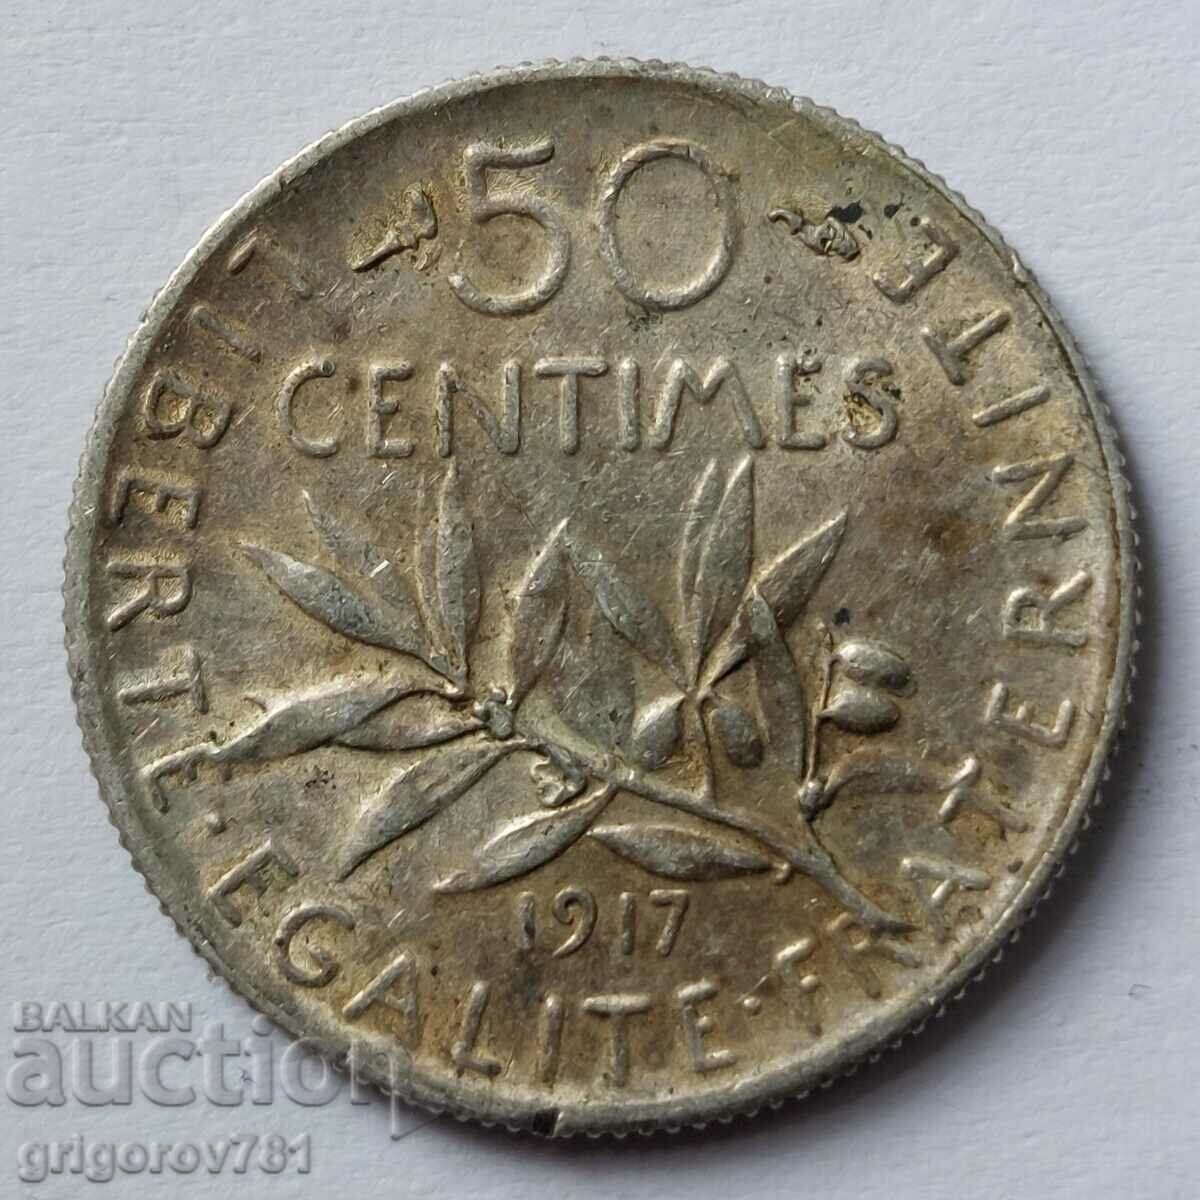 Ασημένιο 50 εκατοστά Γαλλία 1917 - ασημένιο νόμισμα №20